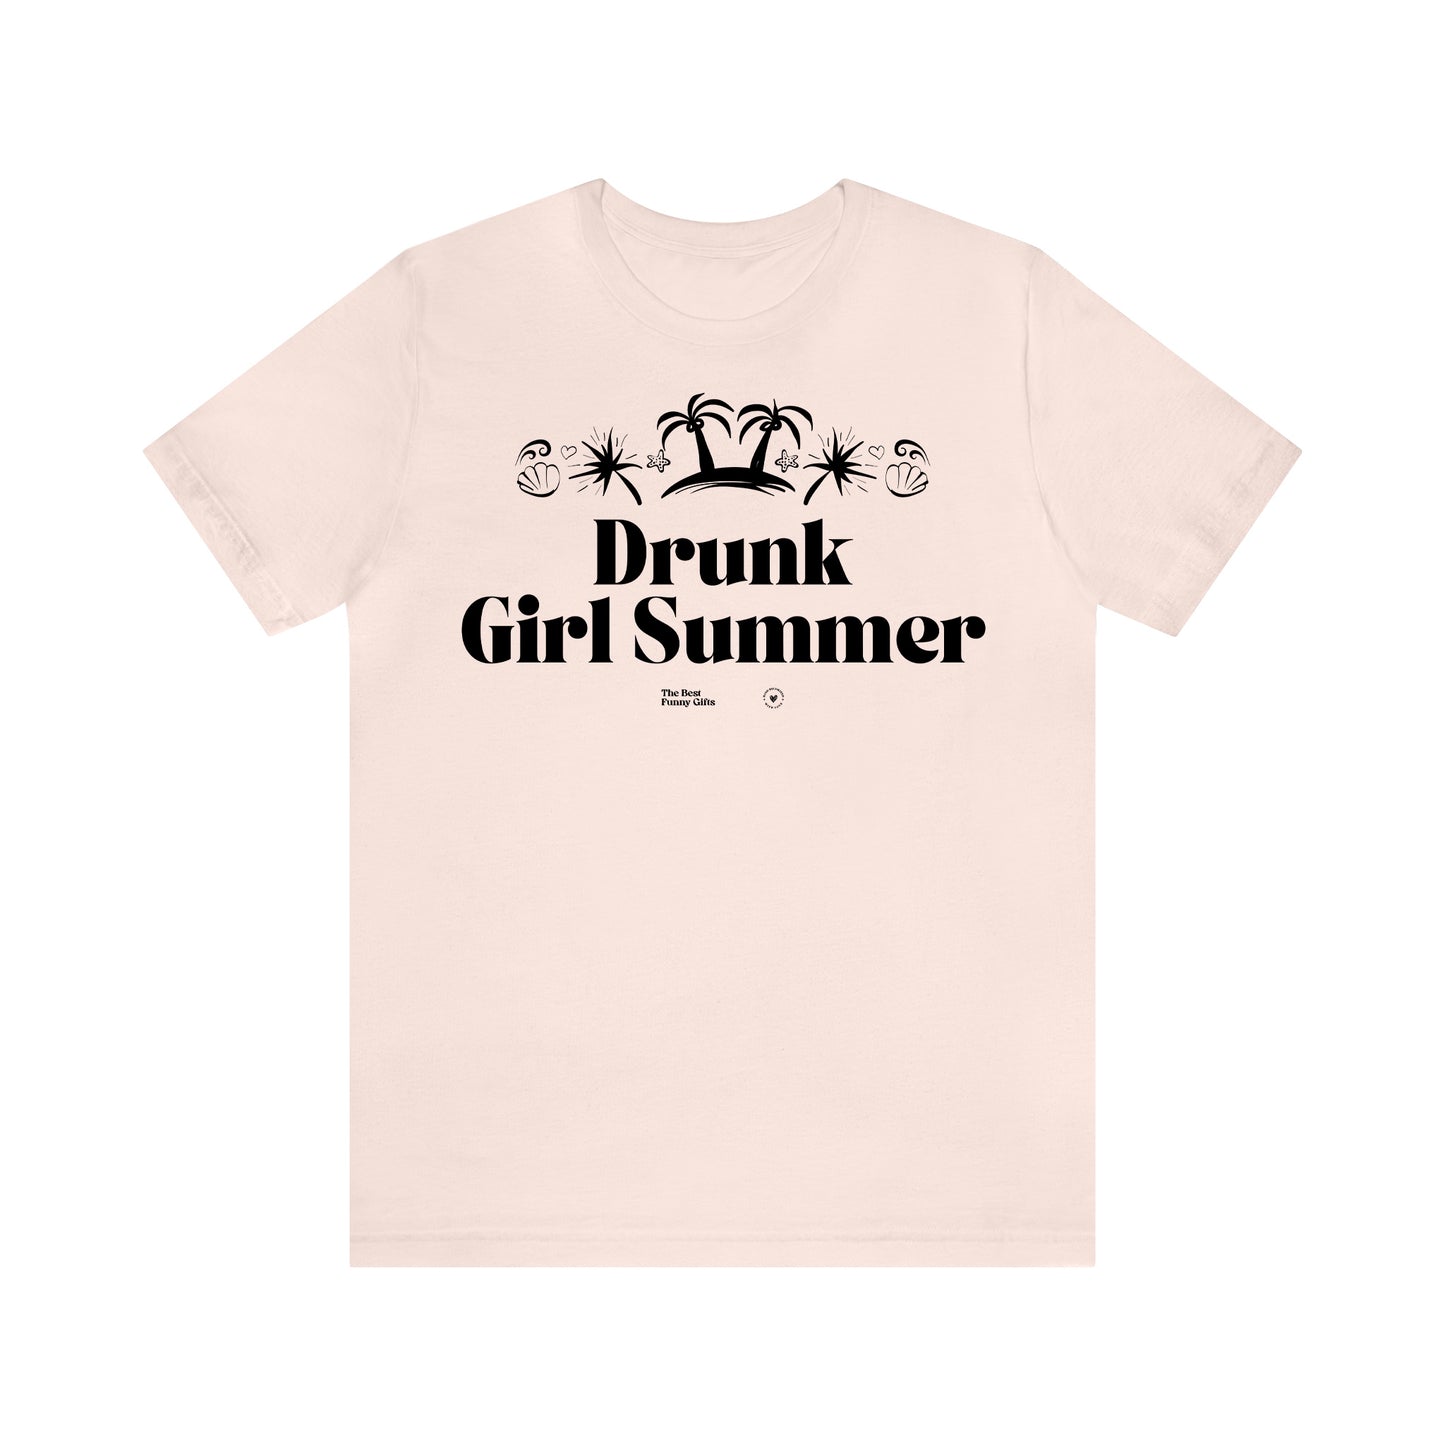 Funny Shirts for Women - Drunk Girl Summer - Women’s T Shirts